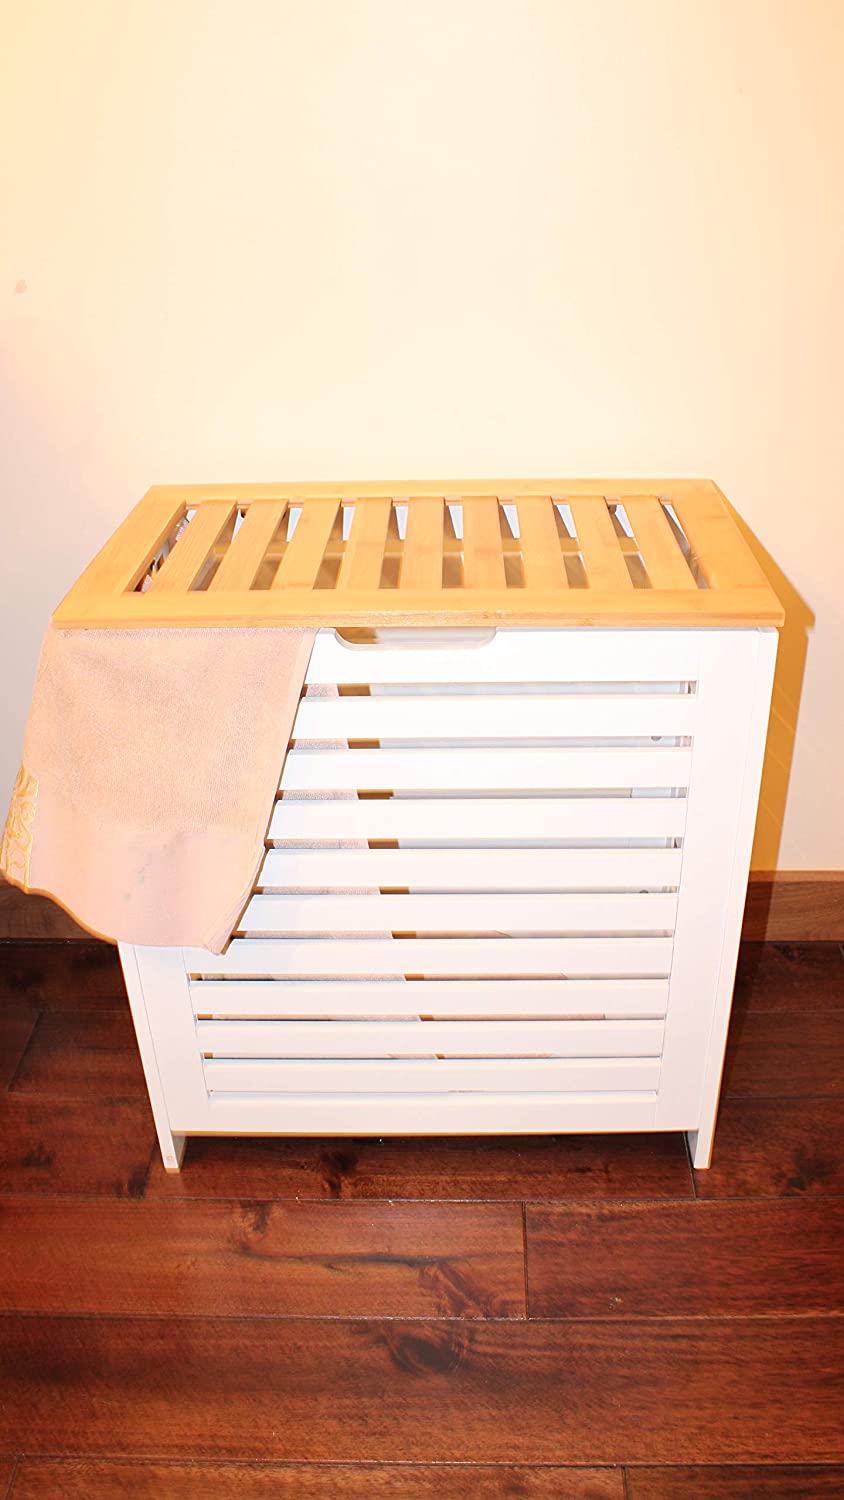 Large White/Oak Wooden Laundry Clothes Bin Basket Rectangle Hamper Storage Bathroom Bedroom Lid